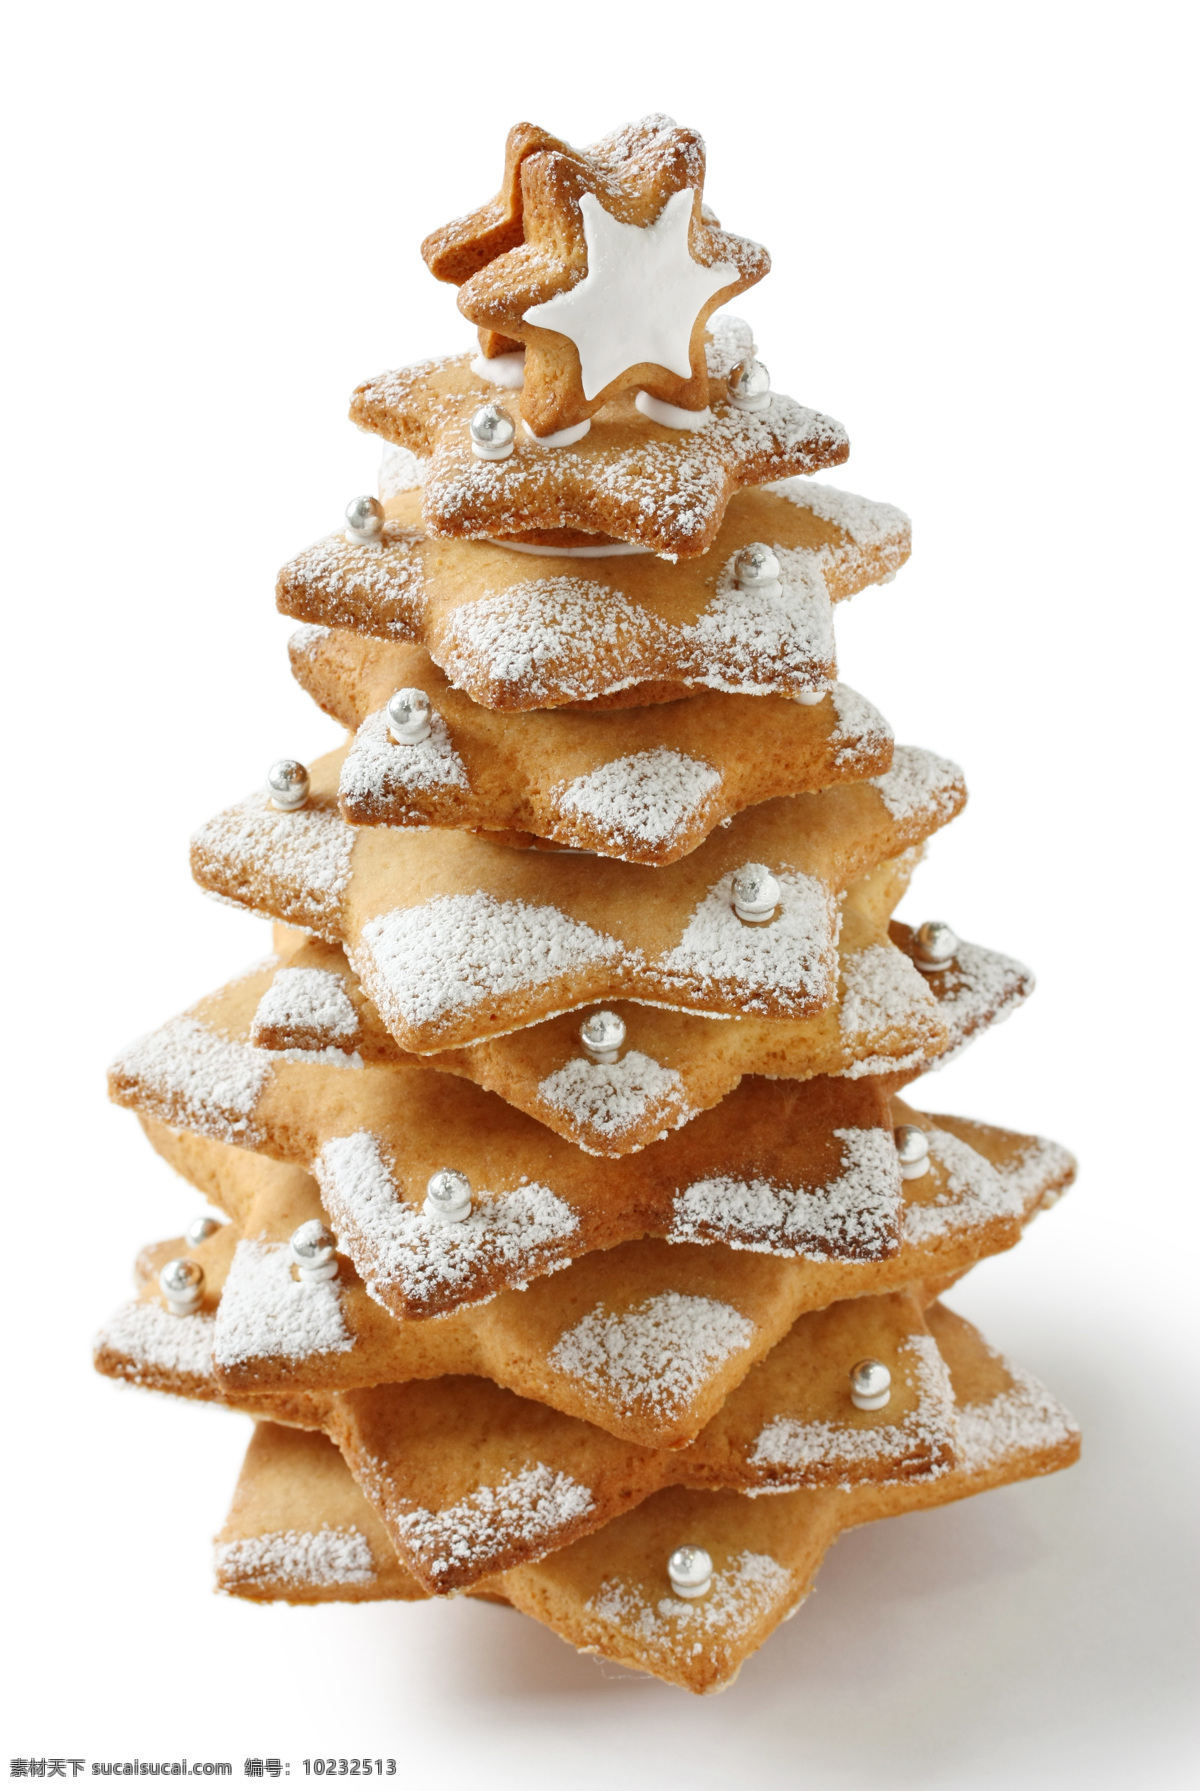 圣诞饼干 圣诞 食物 高清 点心 甜品 饼干 圣诞树 圣诞食物 餐饮美食 西餐美食 外国美食 白色